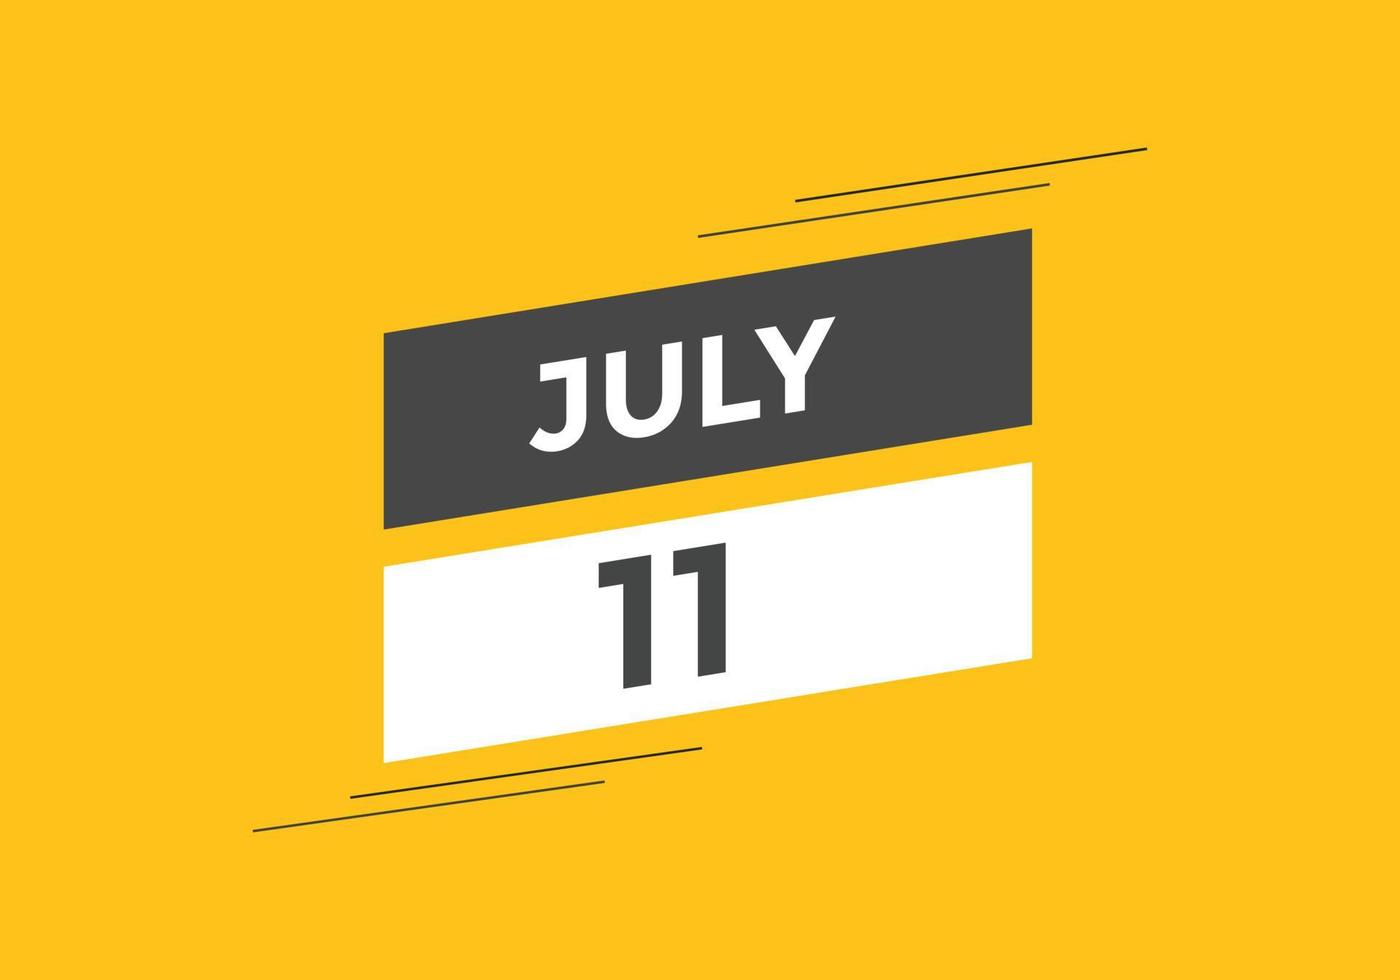 Recordatorio del calendario del 11 de julio. Plantilla de icono de calendario diario del 11 de julio. plantilla de diseño de icono de calendario 11 de julio. ilustración vectorial vector